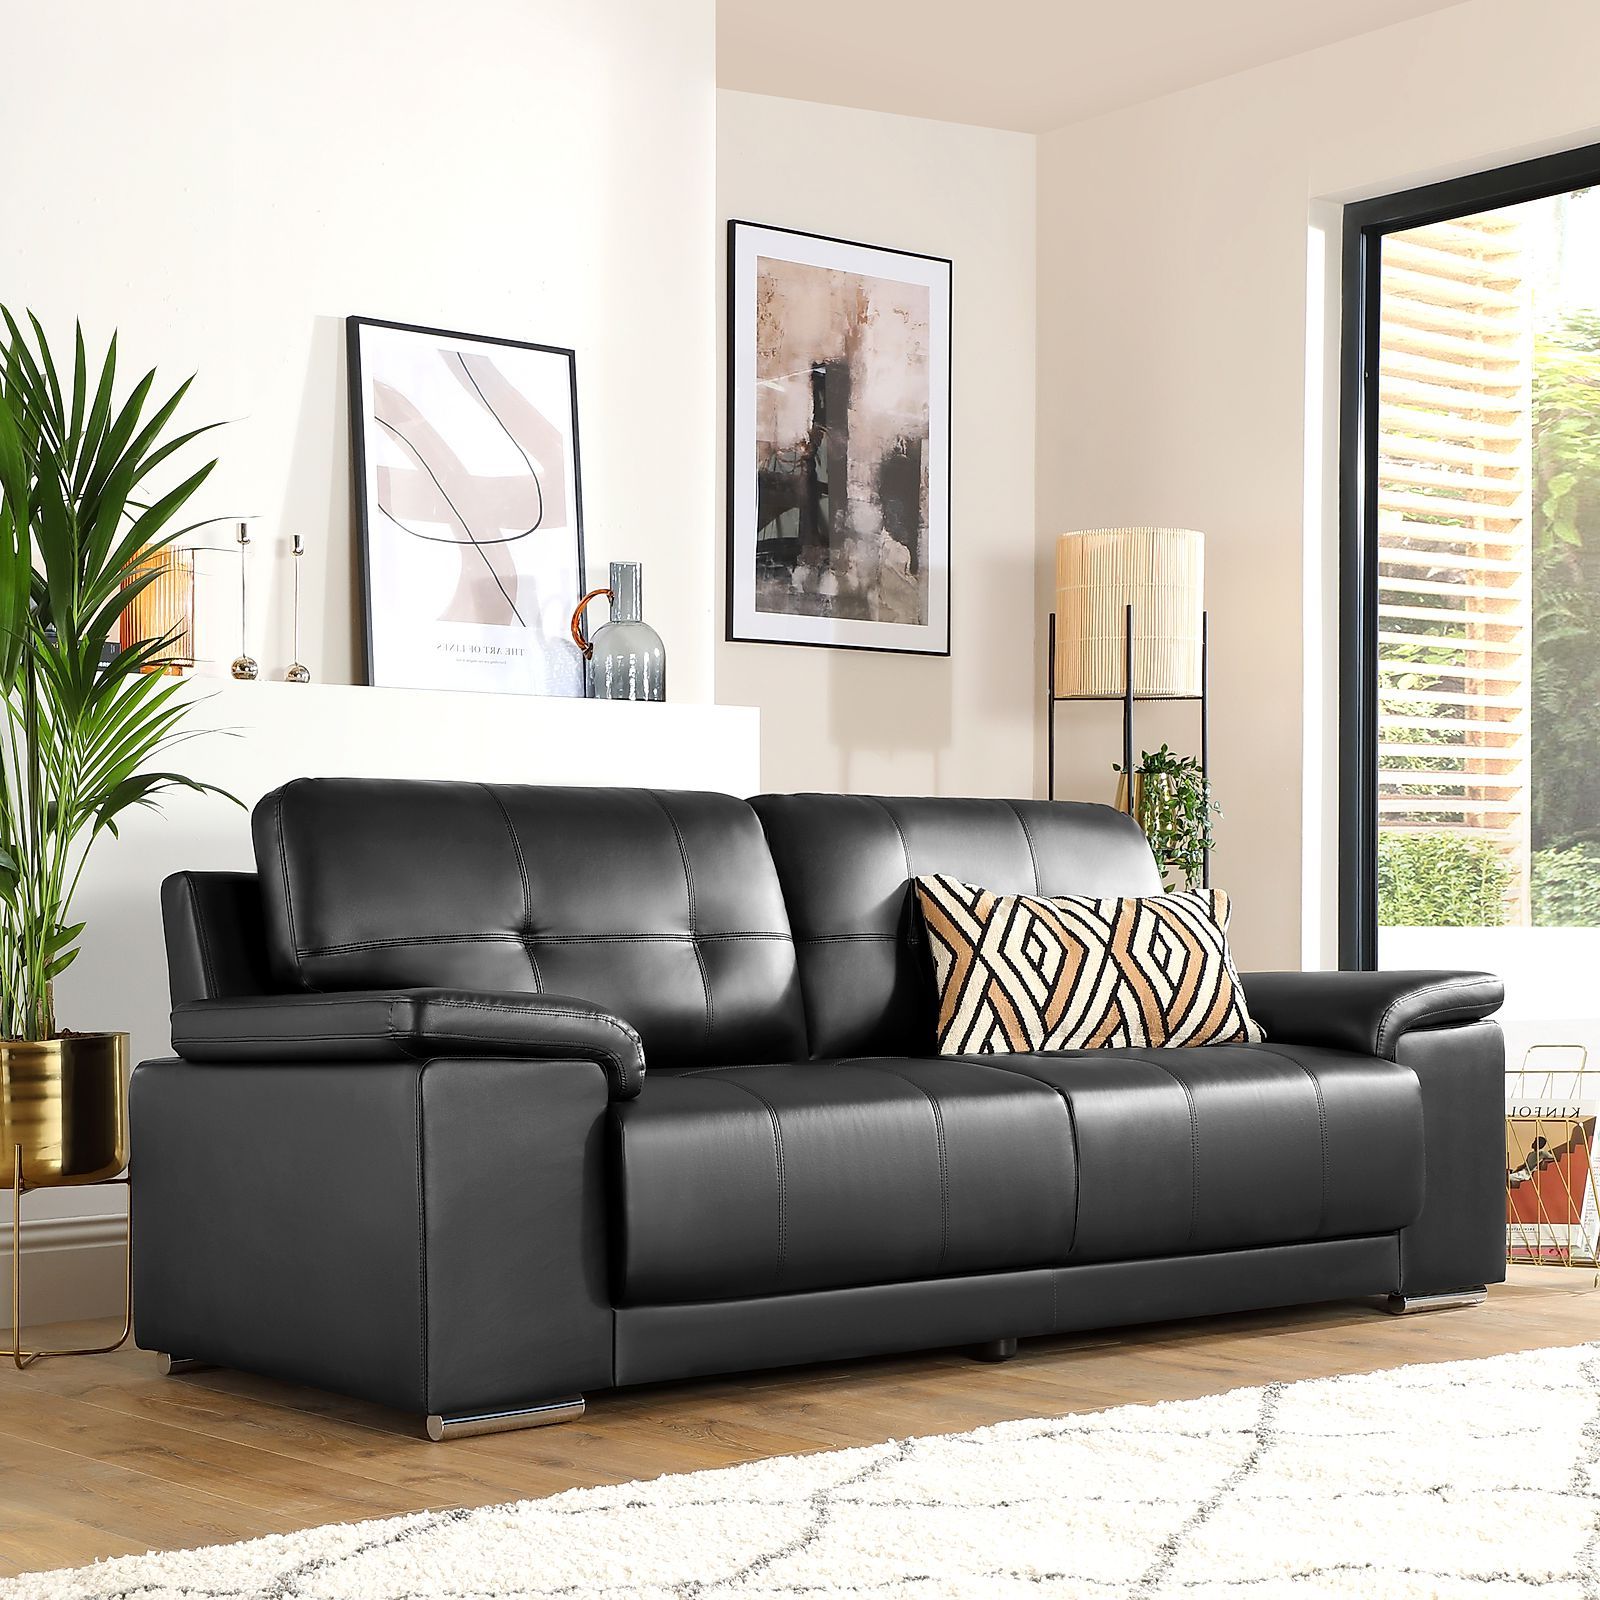 Furniture Choice Regarding Favorite 3 Seat L Shaped Sofas In Black (View 6 of 15)